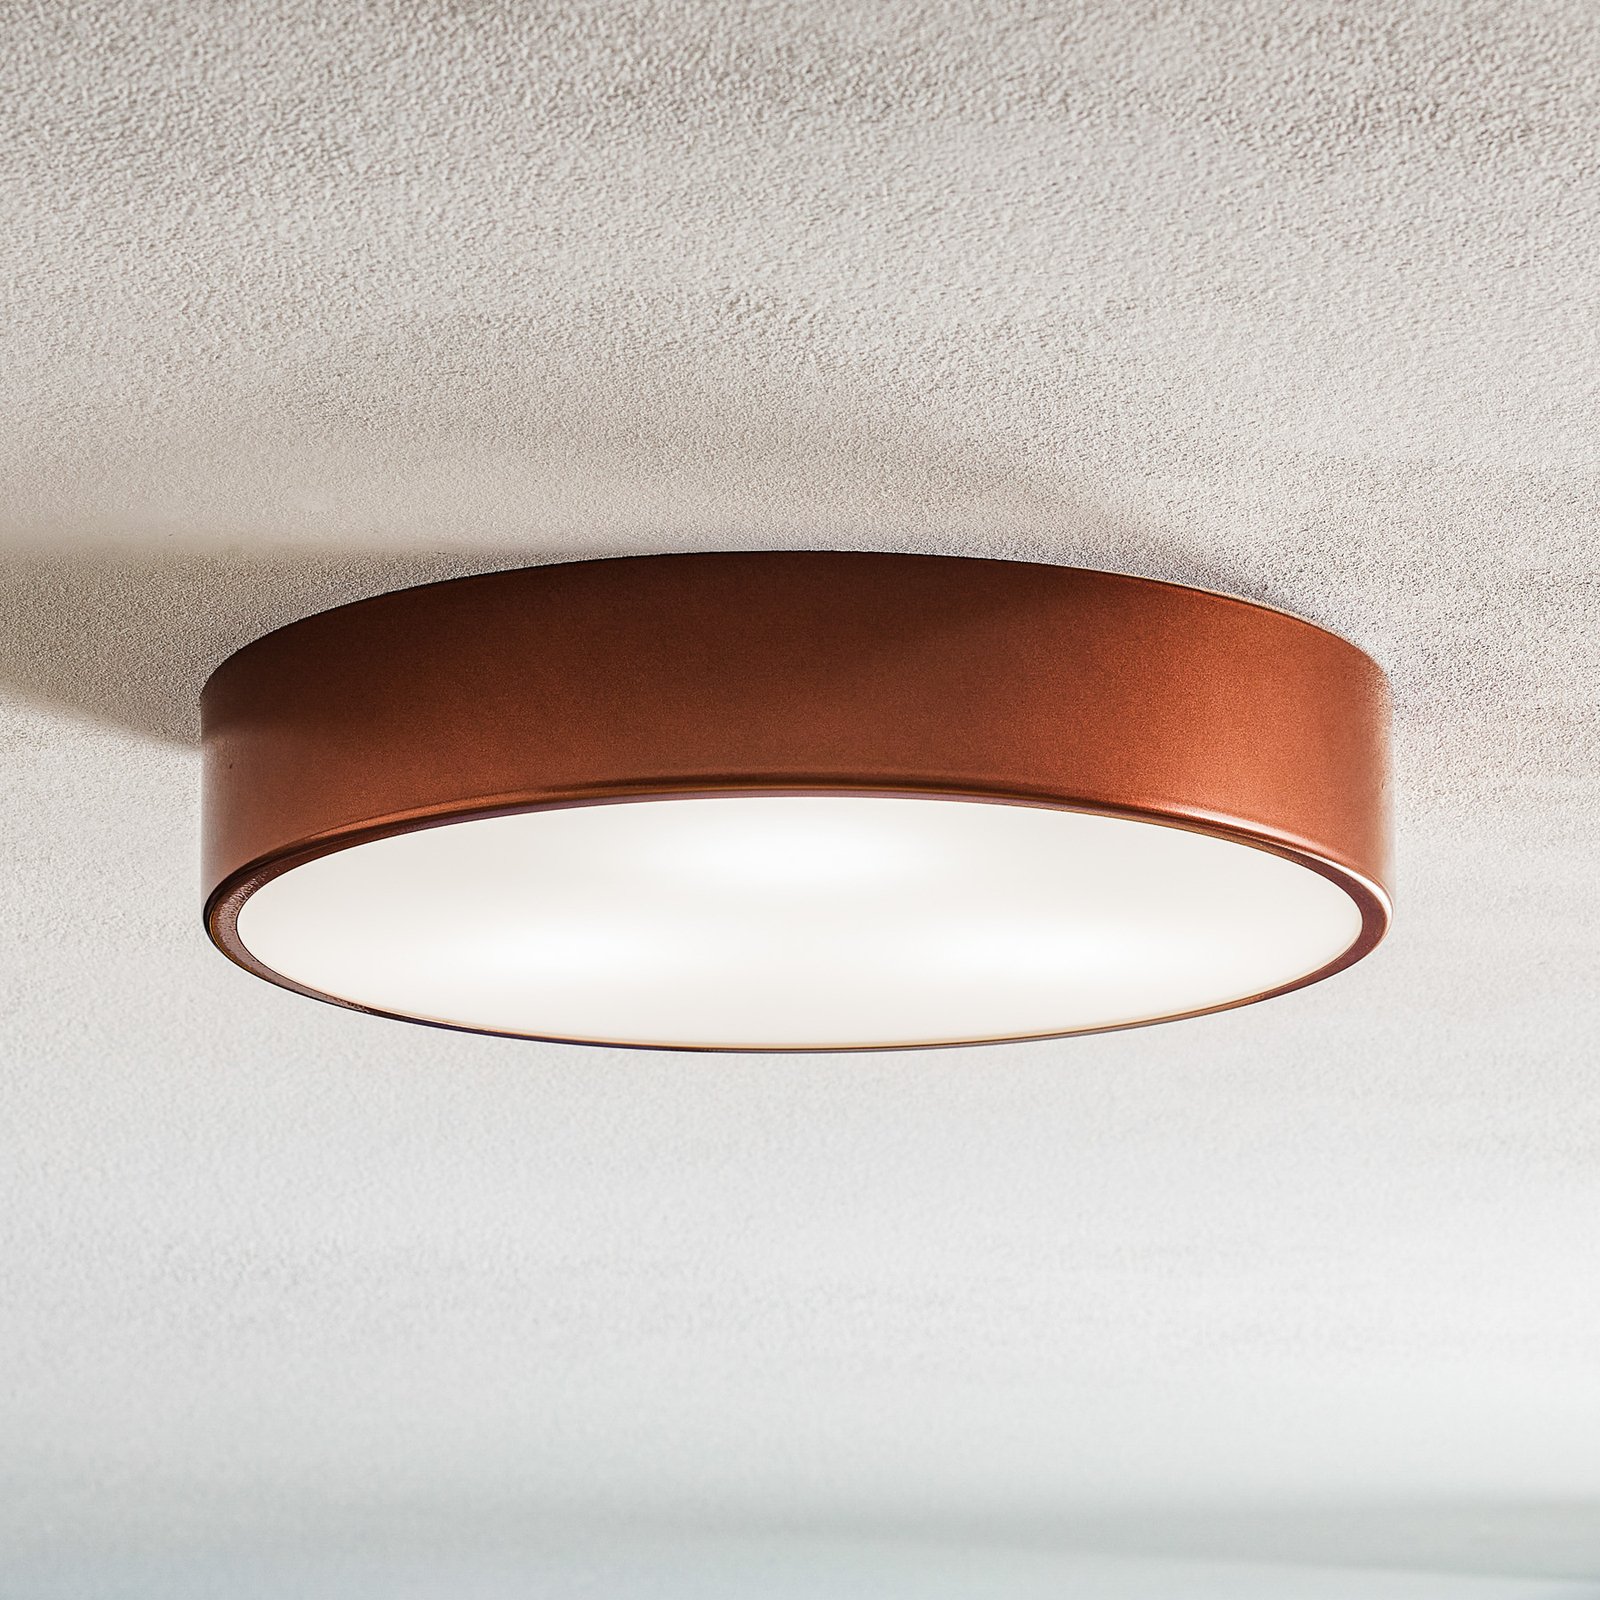 Cleo 400 ceiling light, sensor, Ø 40 cm copper